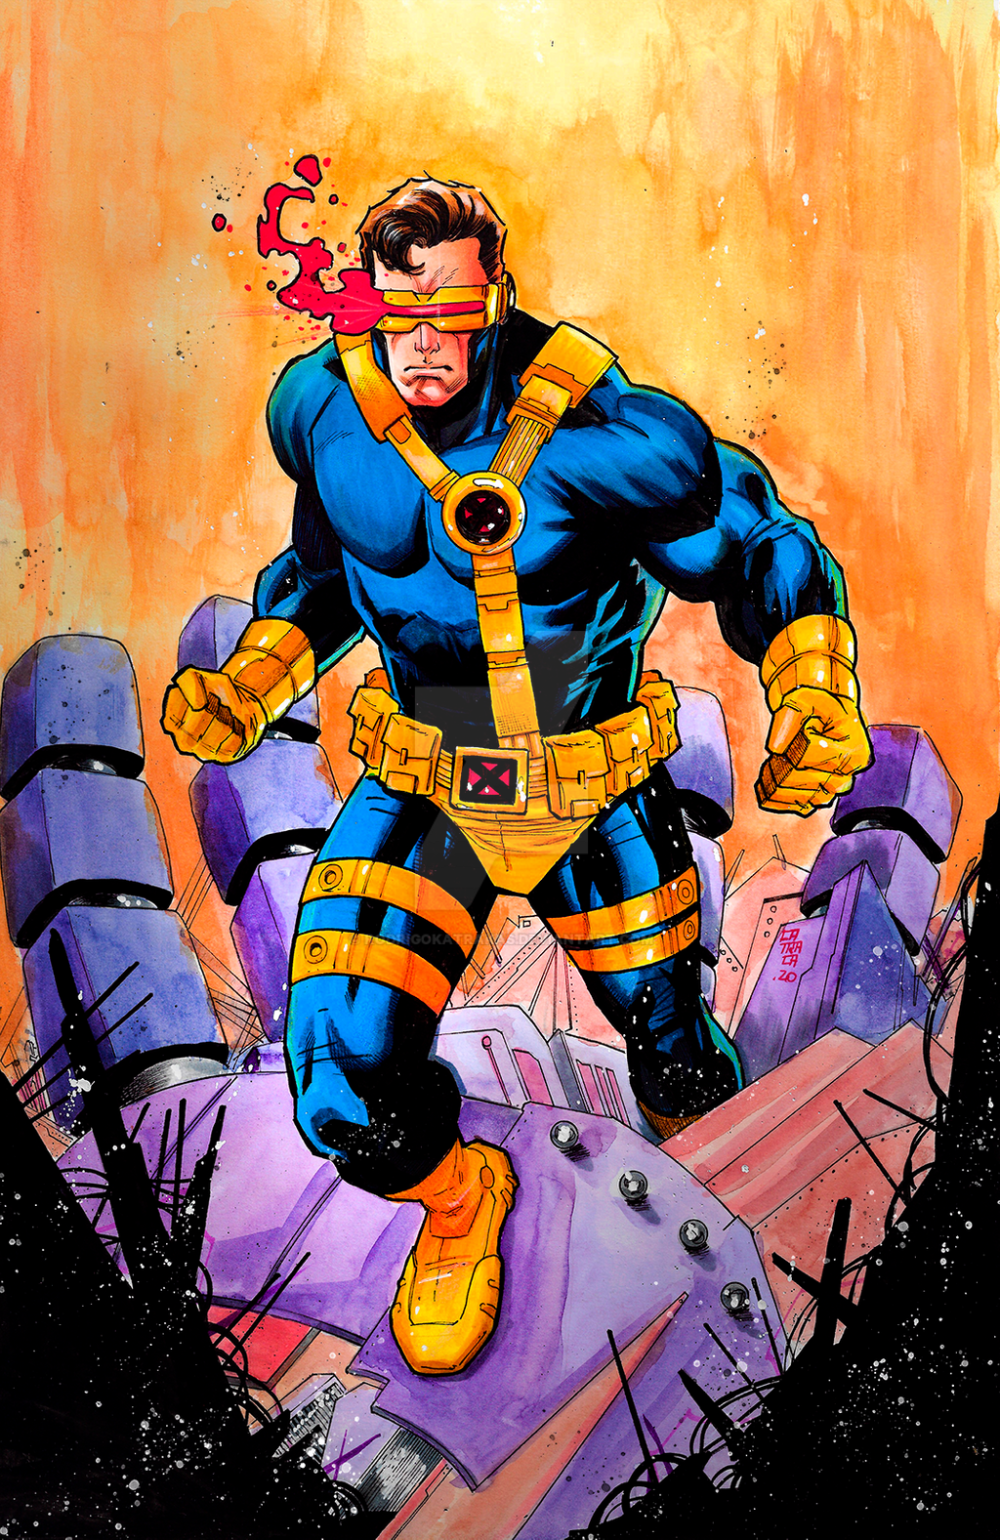 Cyclops X-Men x Valorant Digital Wallpapers